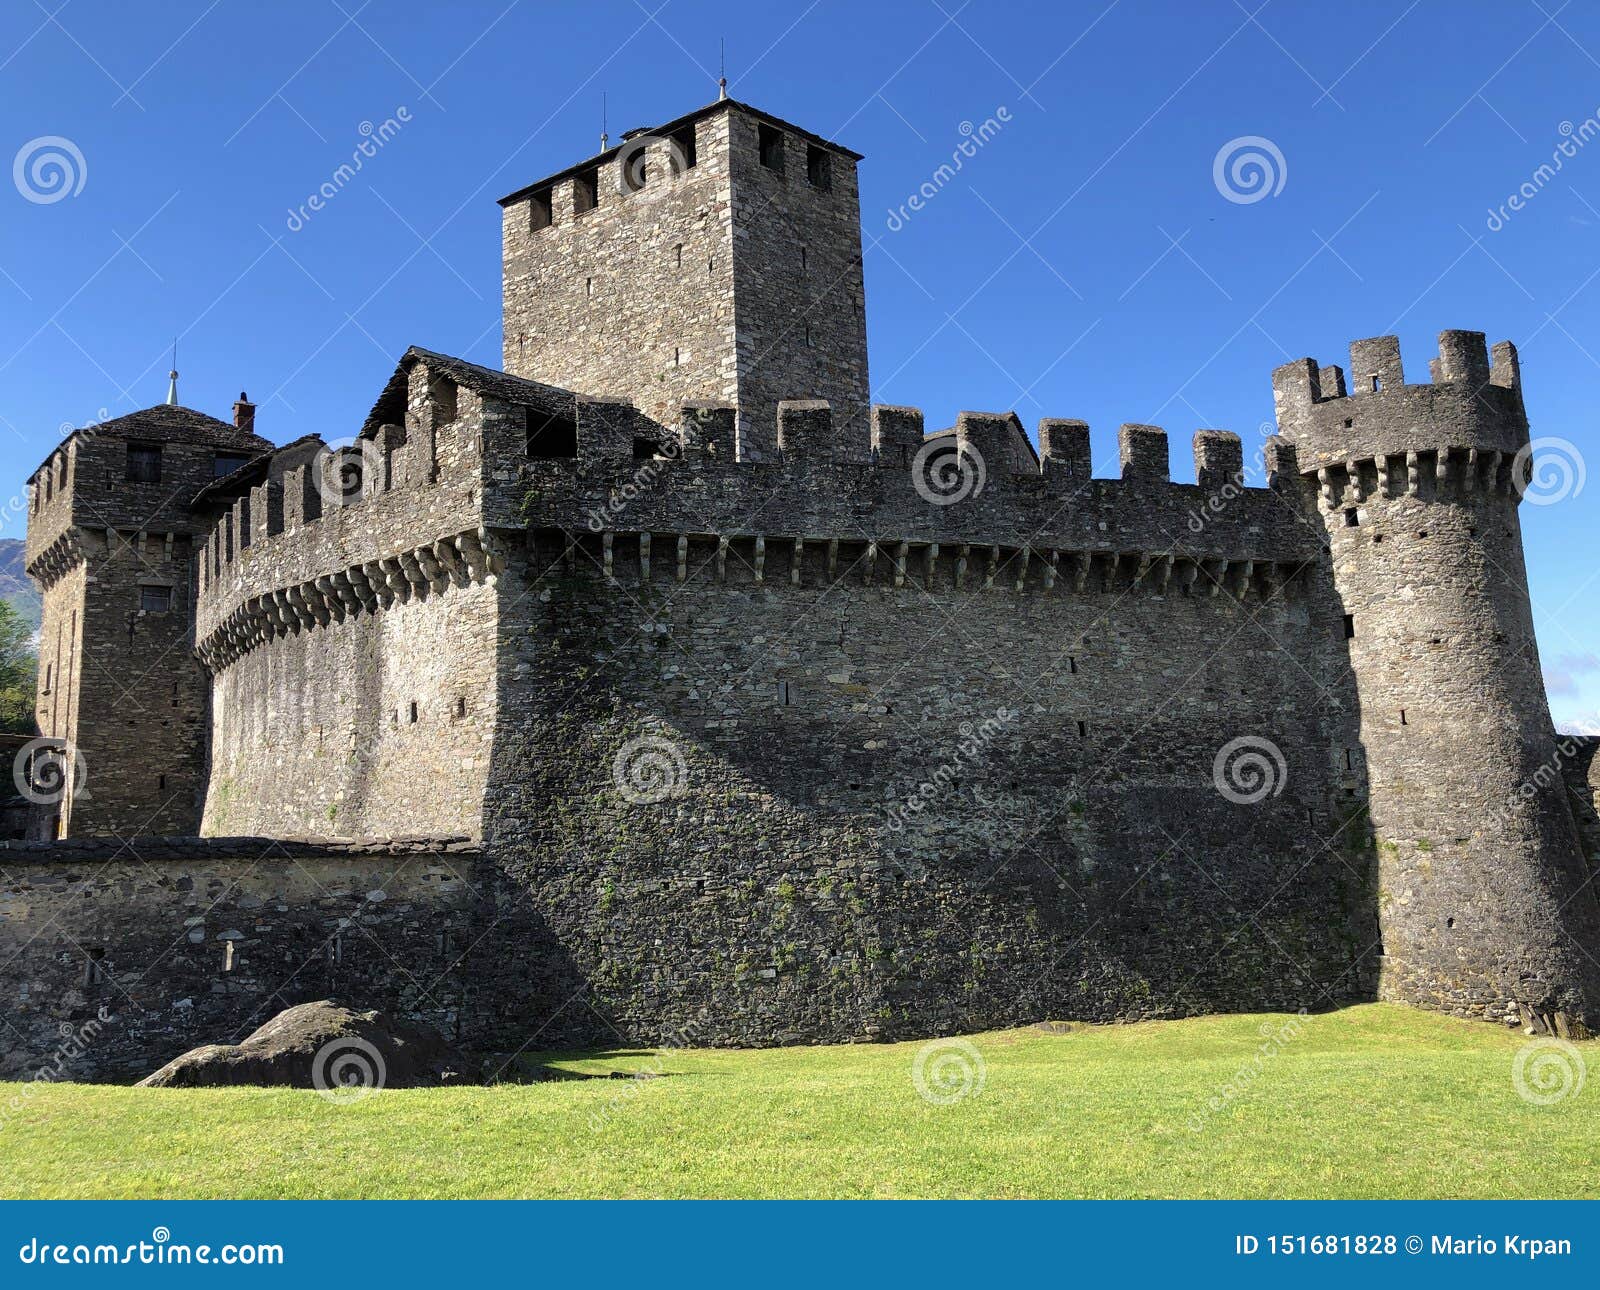 montebello castle or castello di montebello or burg montebello the castles of bellinzona